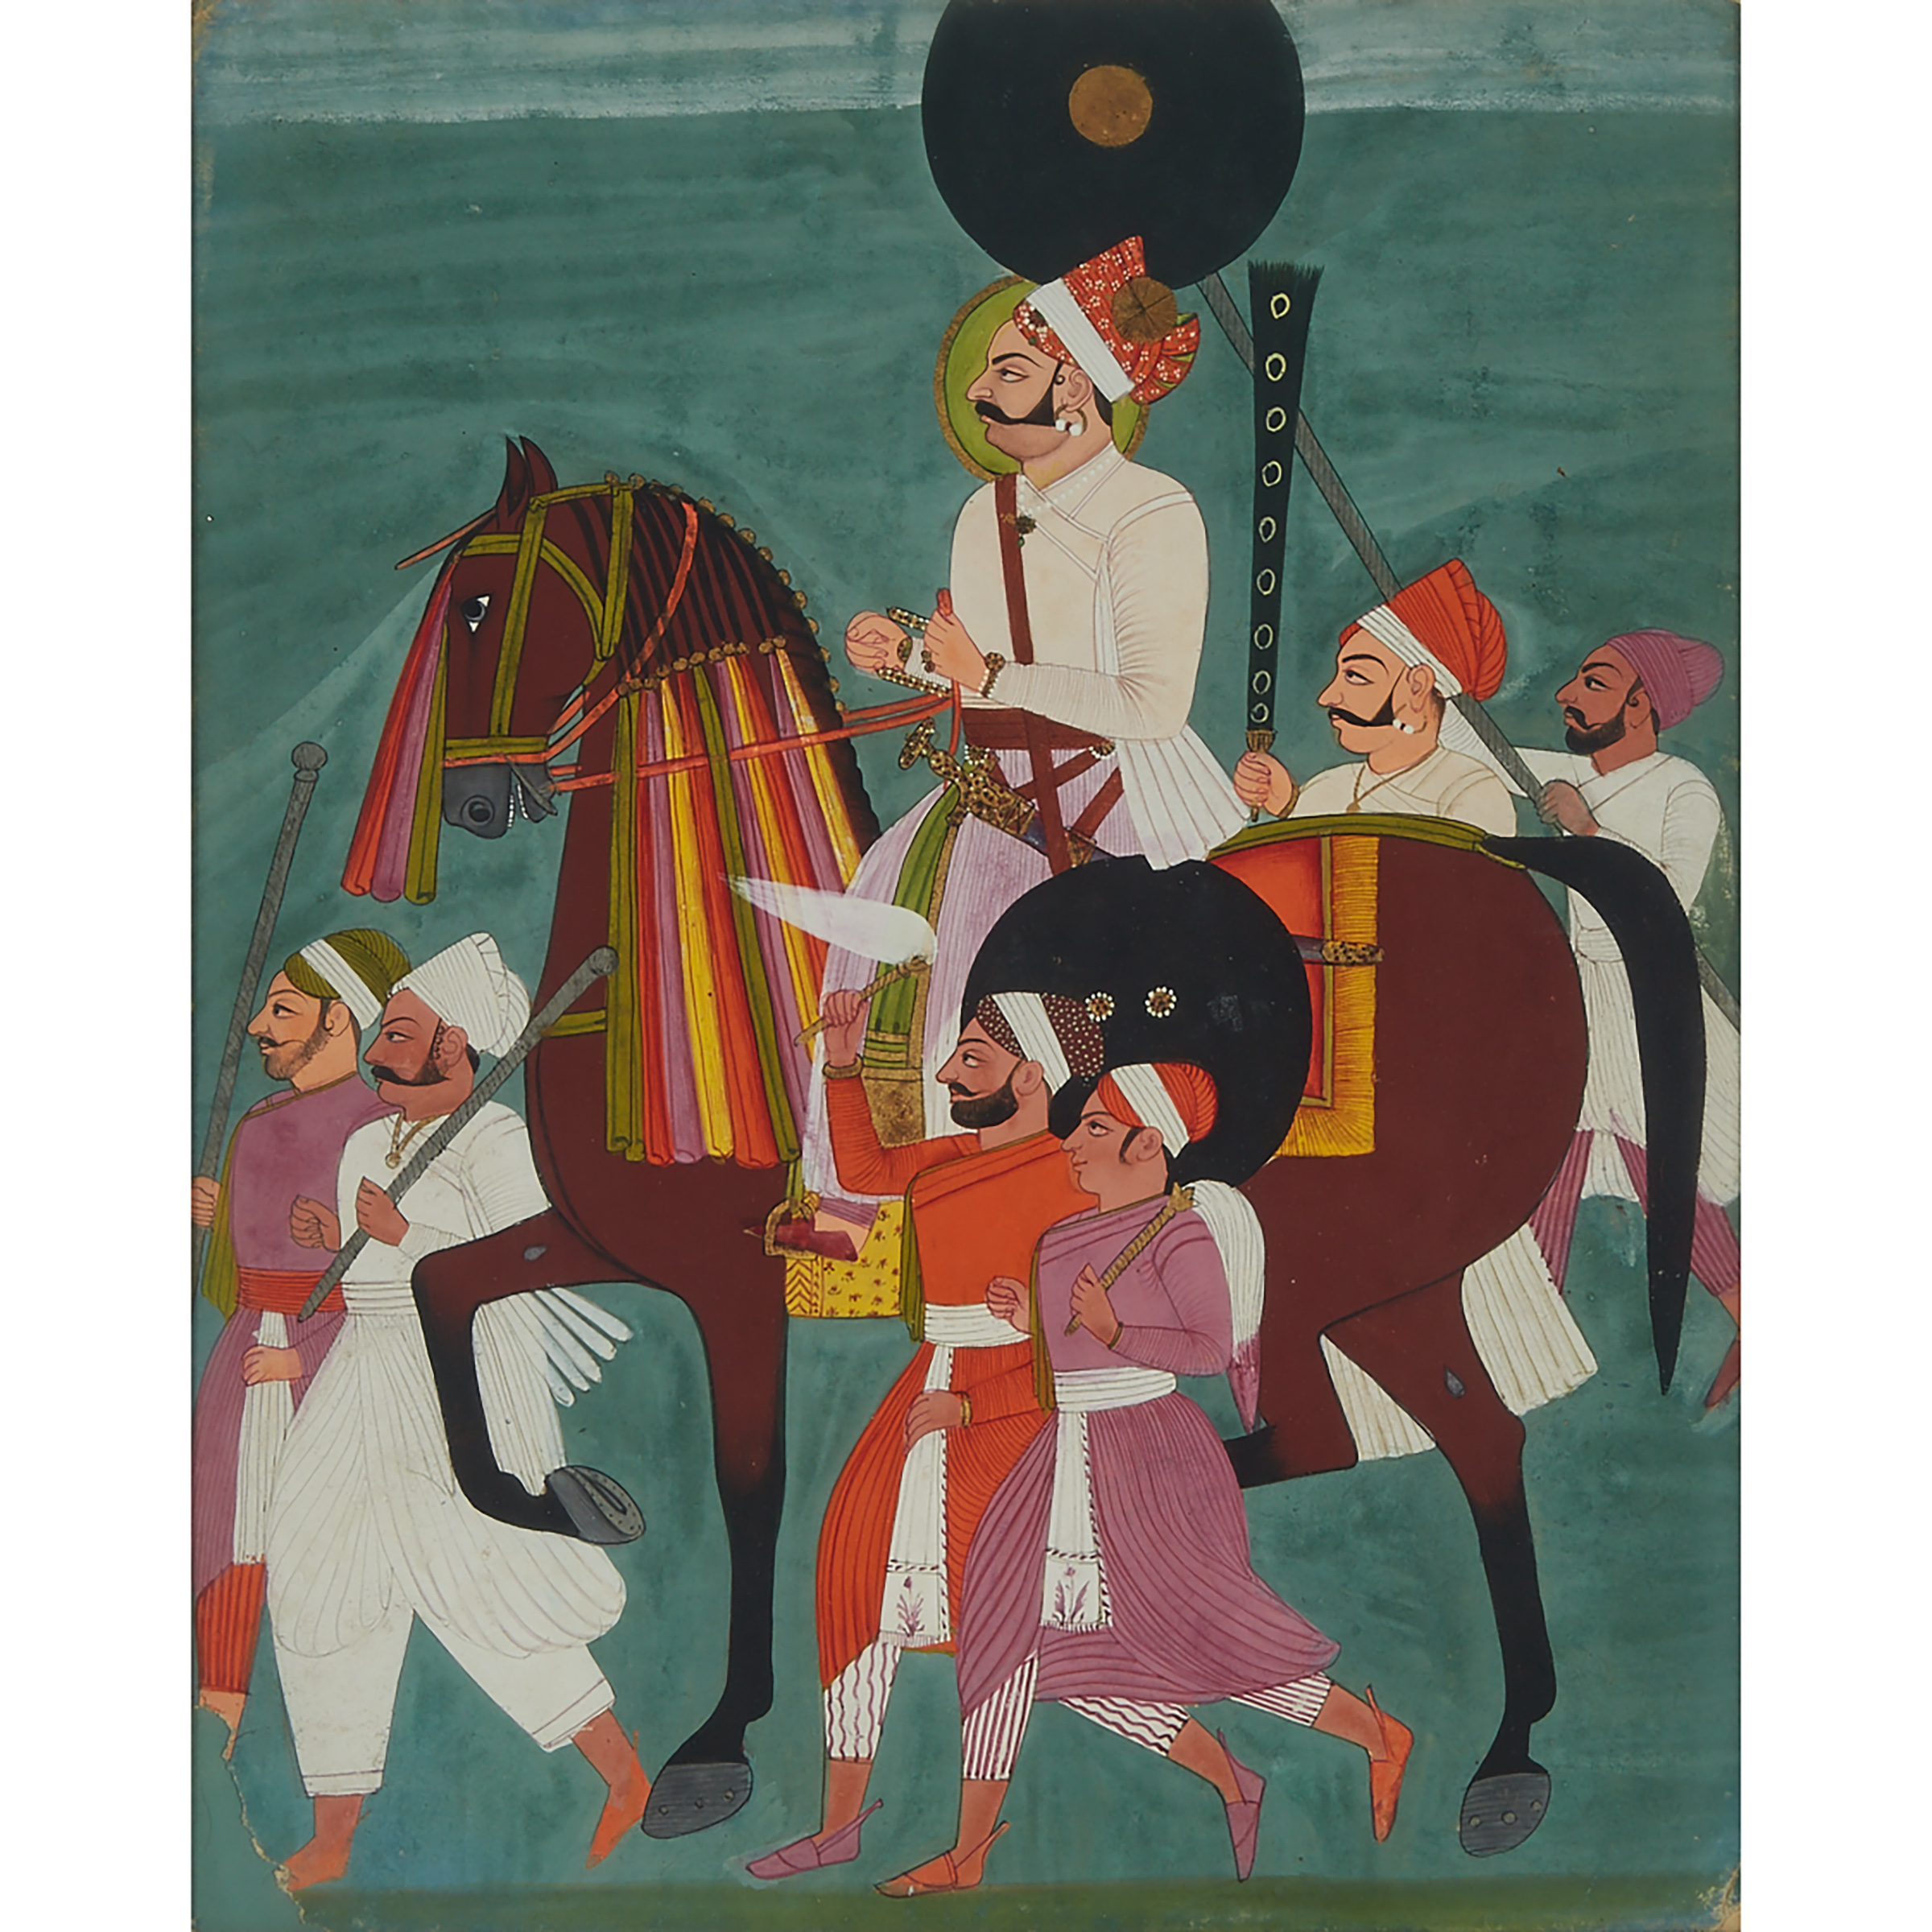 Rajasthan School, Equestrian Portrait, Circa 1800